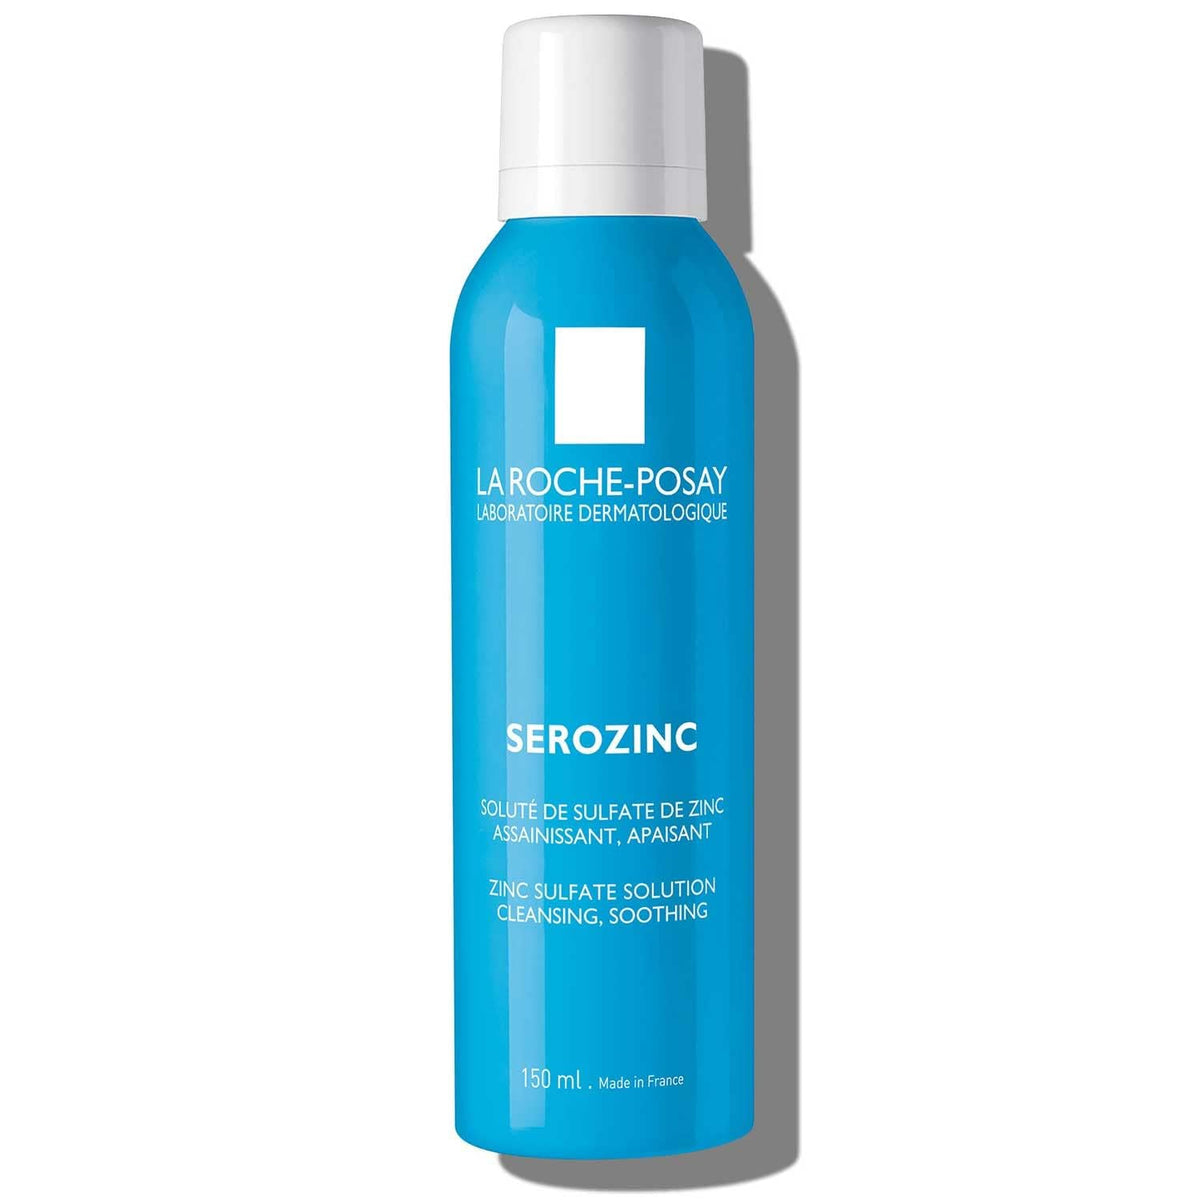 La Roche-Posay Serozinc Face Toner for Oily Skin with Zinc - 150ml